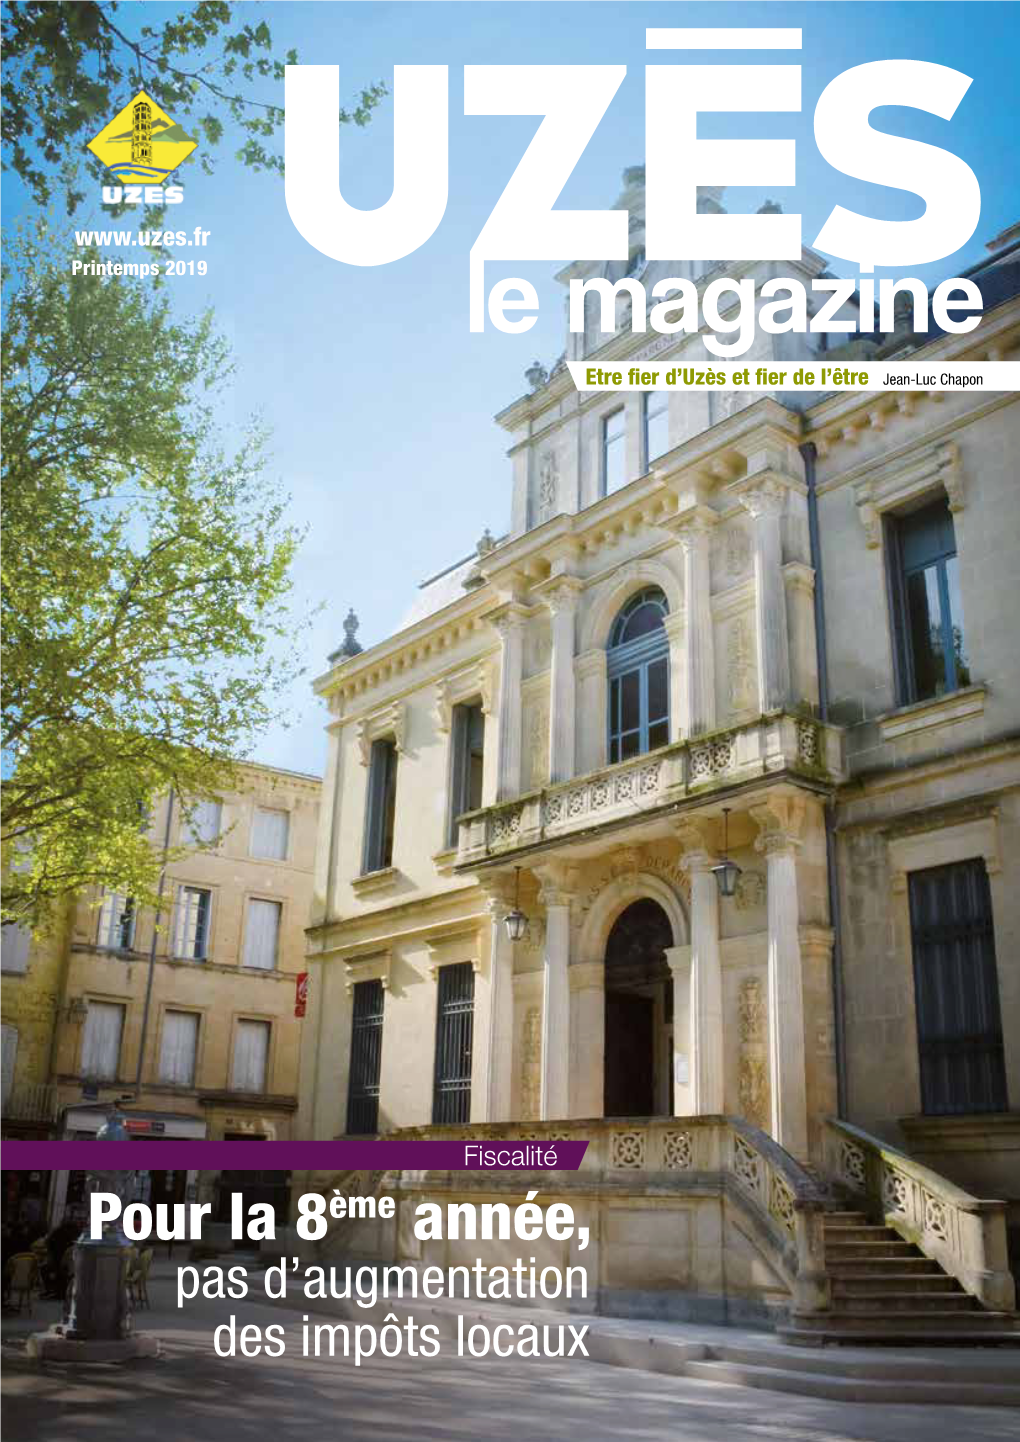 Le Magazine Etre Fier D’Uzès Et Fier De L’Être Jean-Luc Chapon